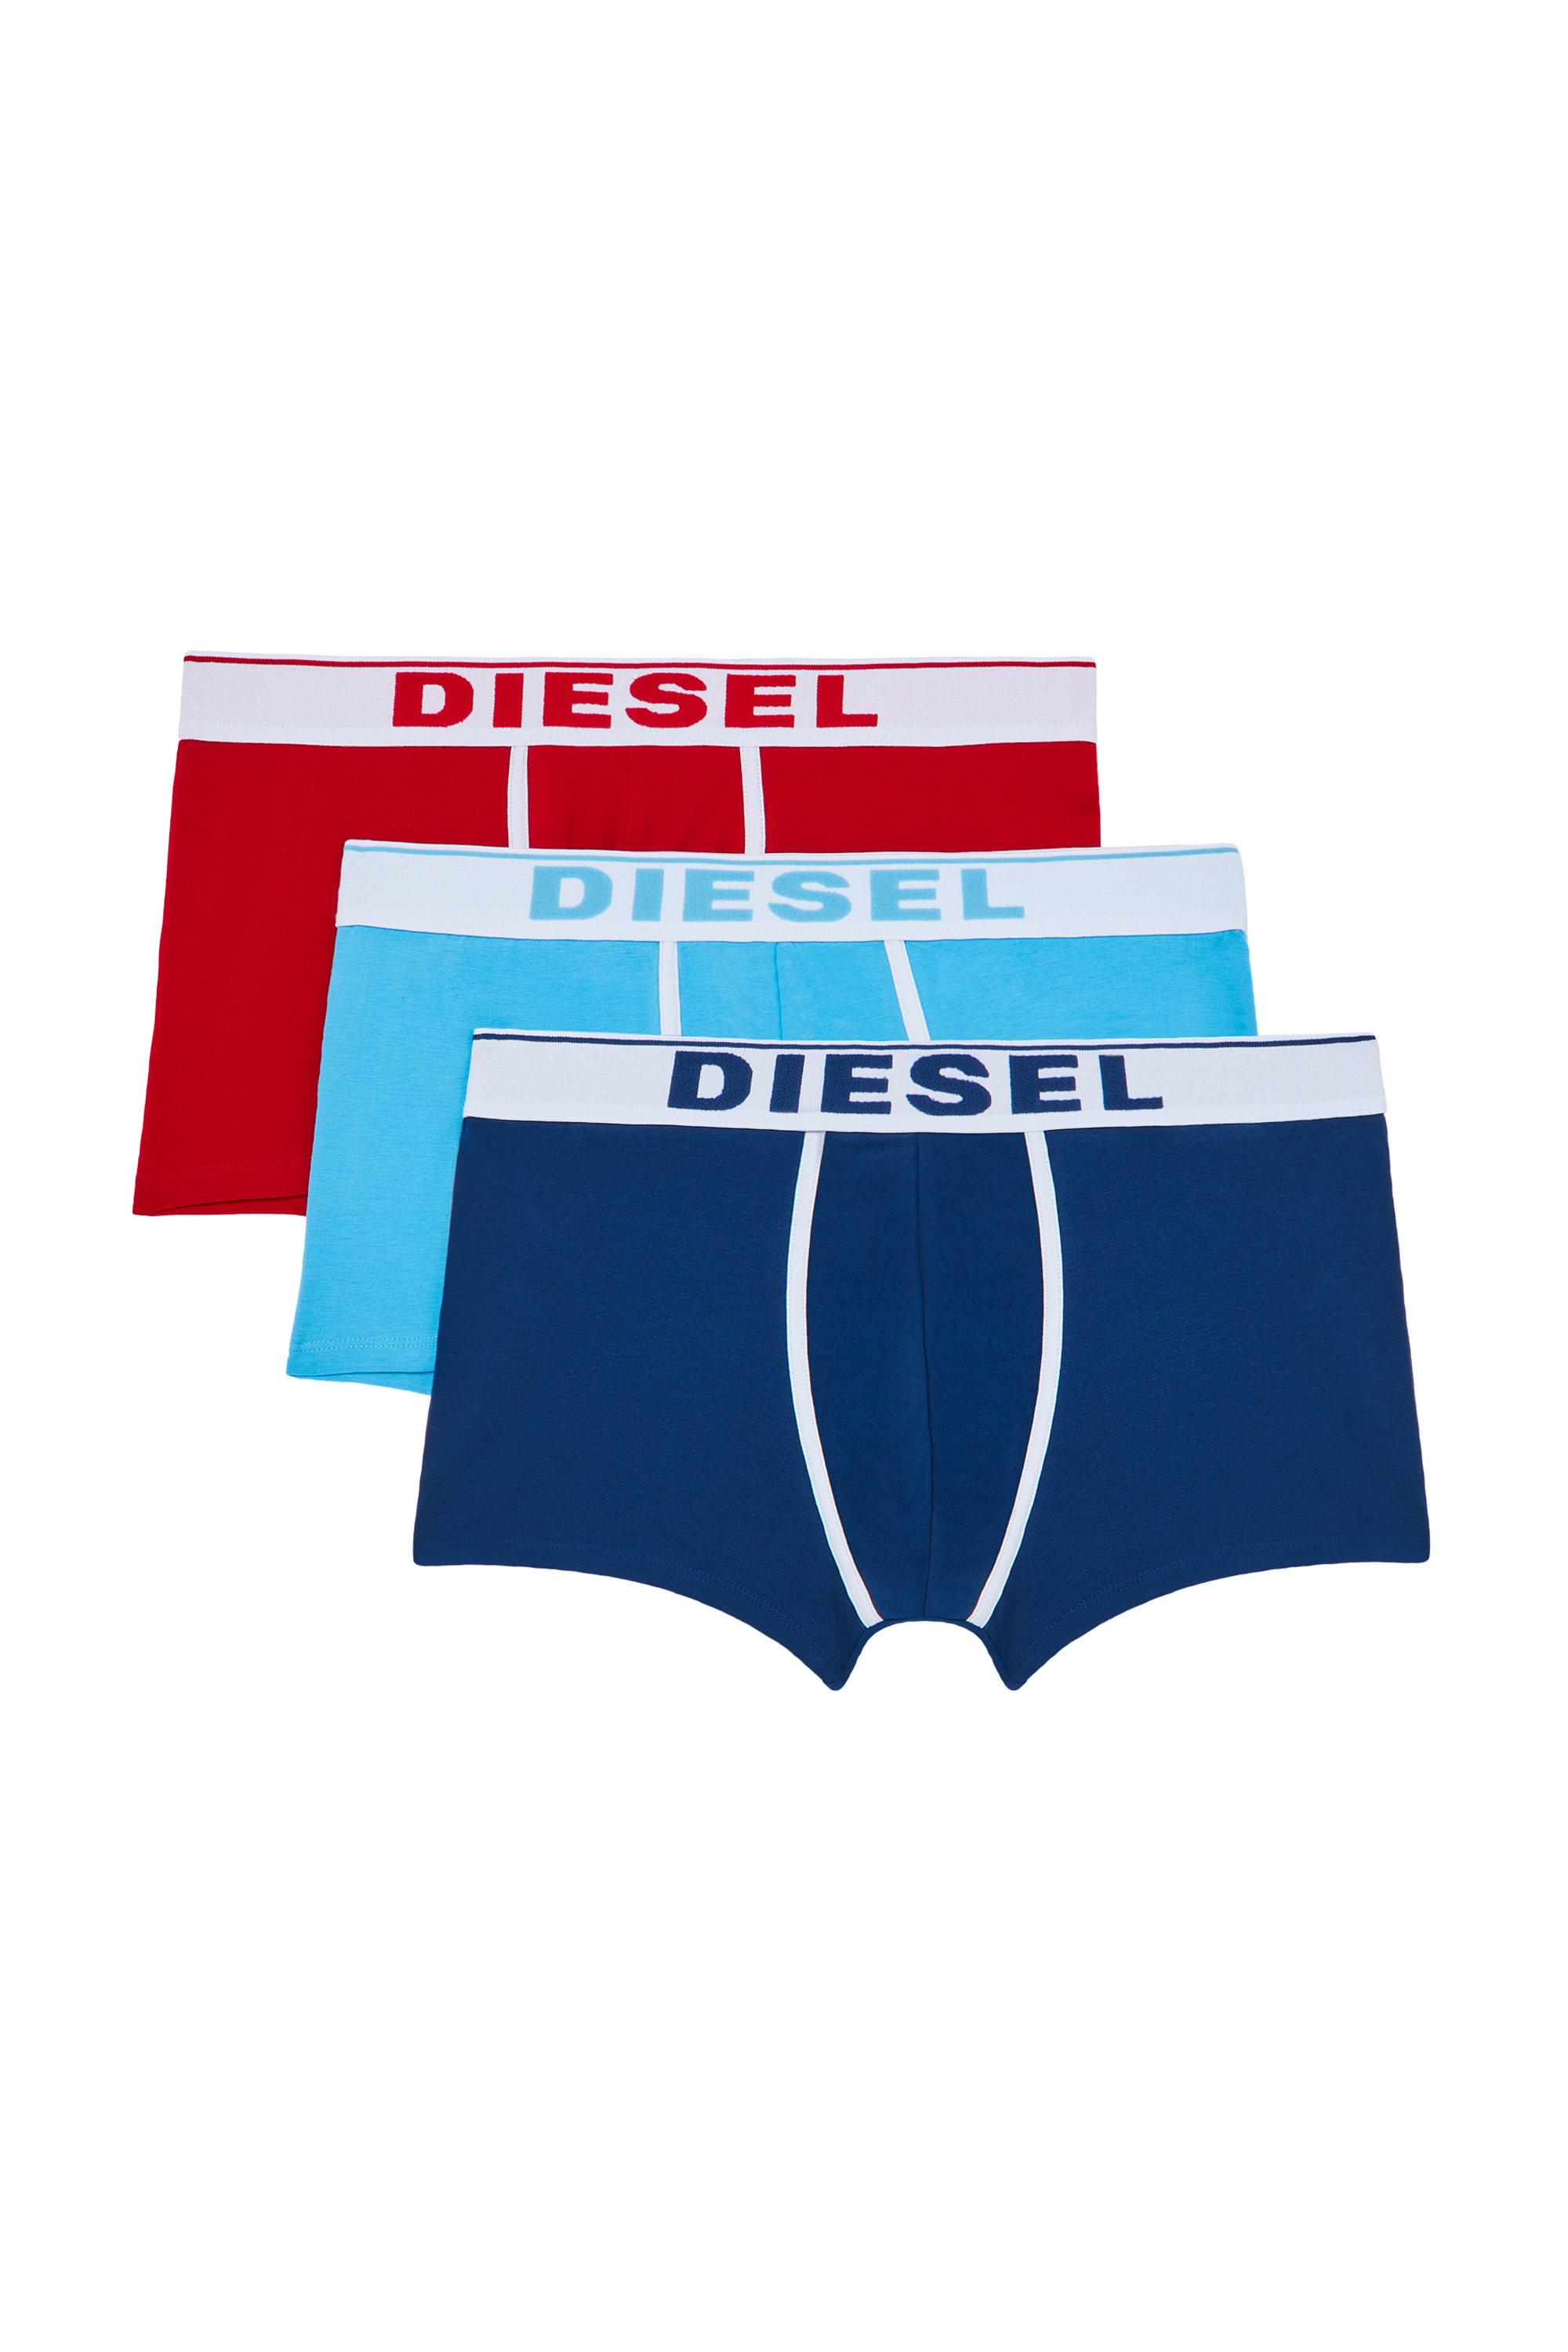 Diesel - UMBX-DAMIENTHREEPACK, Red/Blue - Image 2